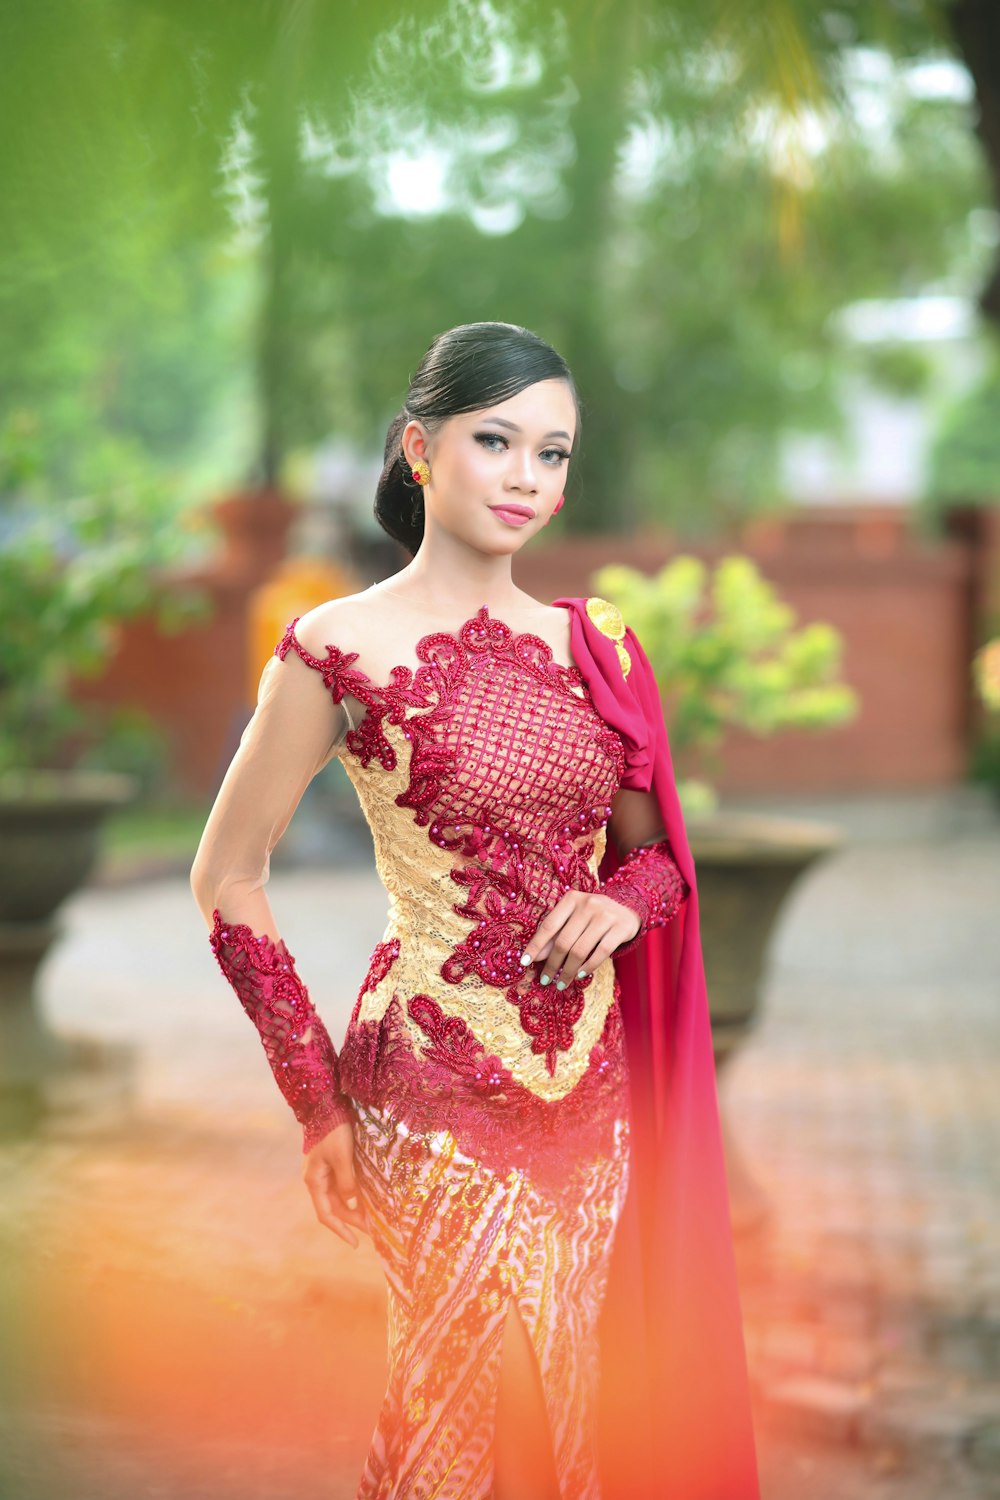 Moderar donante Pino Foto Una mujer con un vestido rojo y dorado – Imagen Ciudad de surabaya  gratis en Unsplash